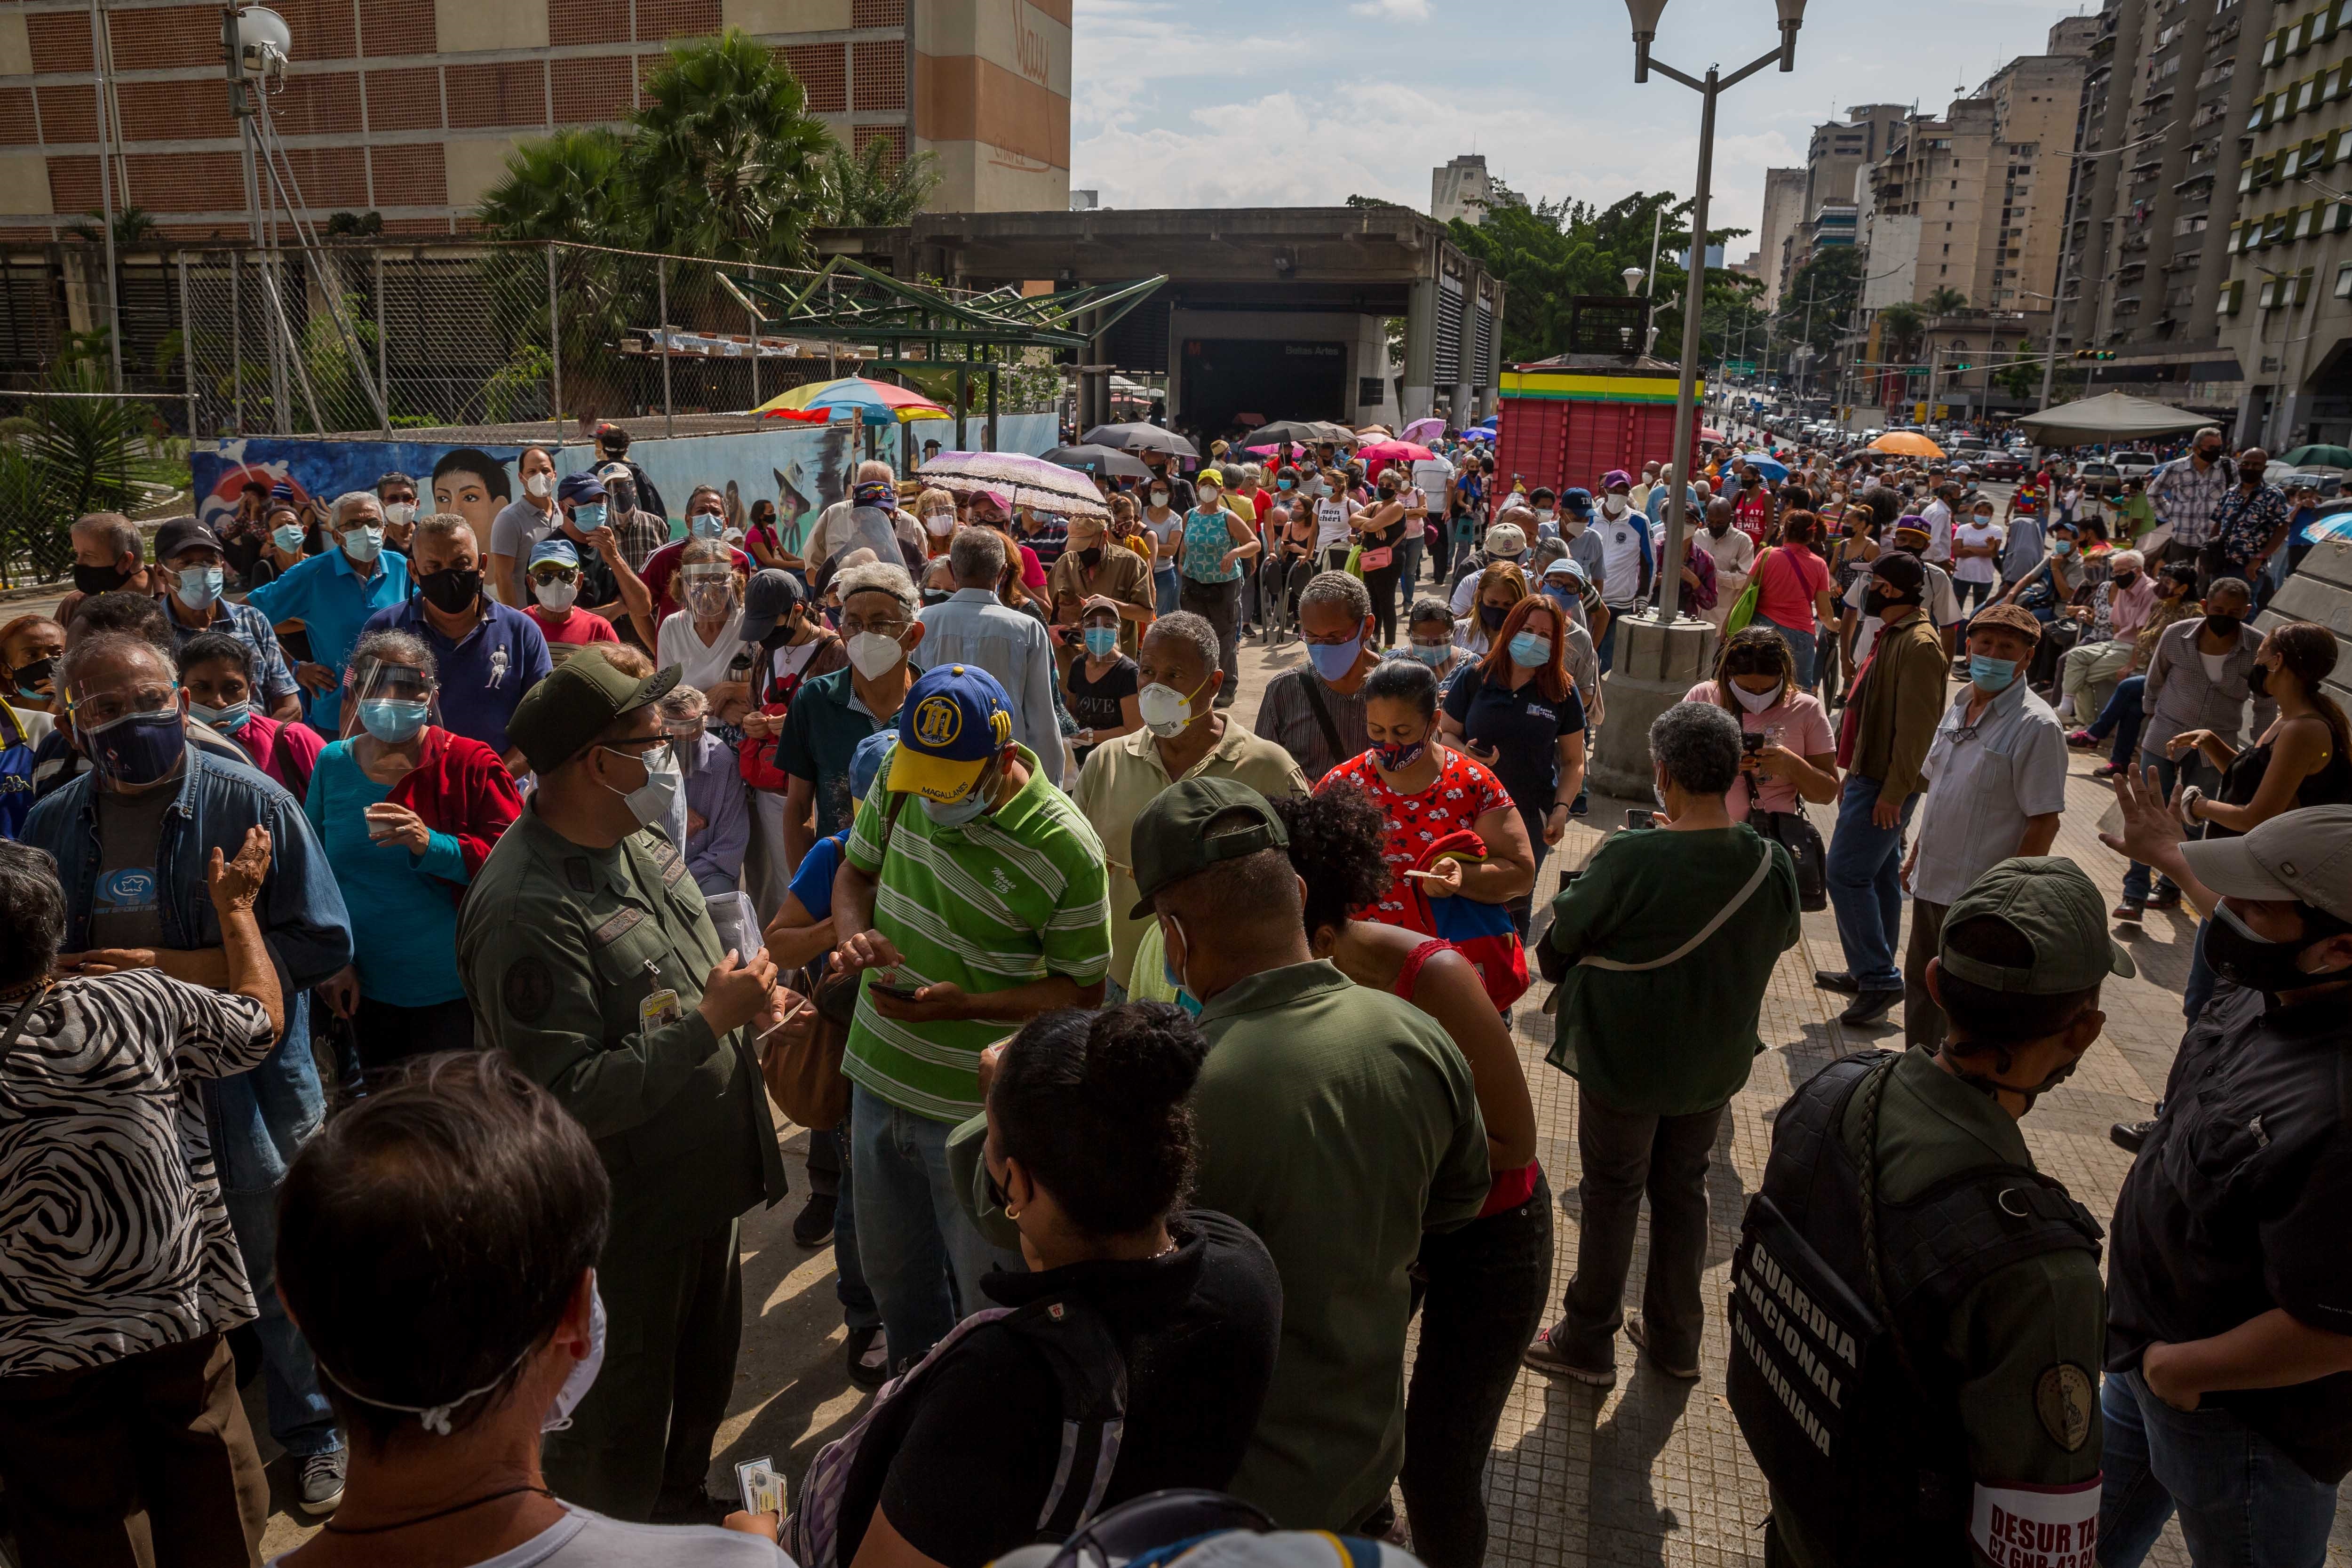 Entre el desorden y la buena suerte, avanza la vacunación contra el Covid-19 en Venezuela (Fotos)